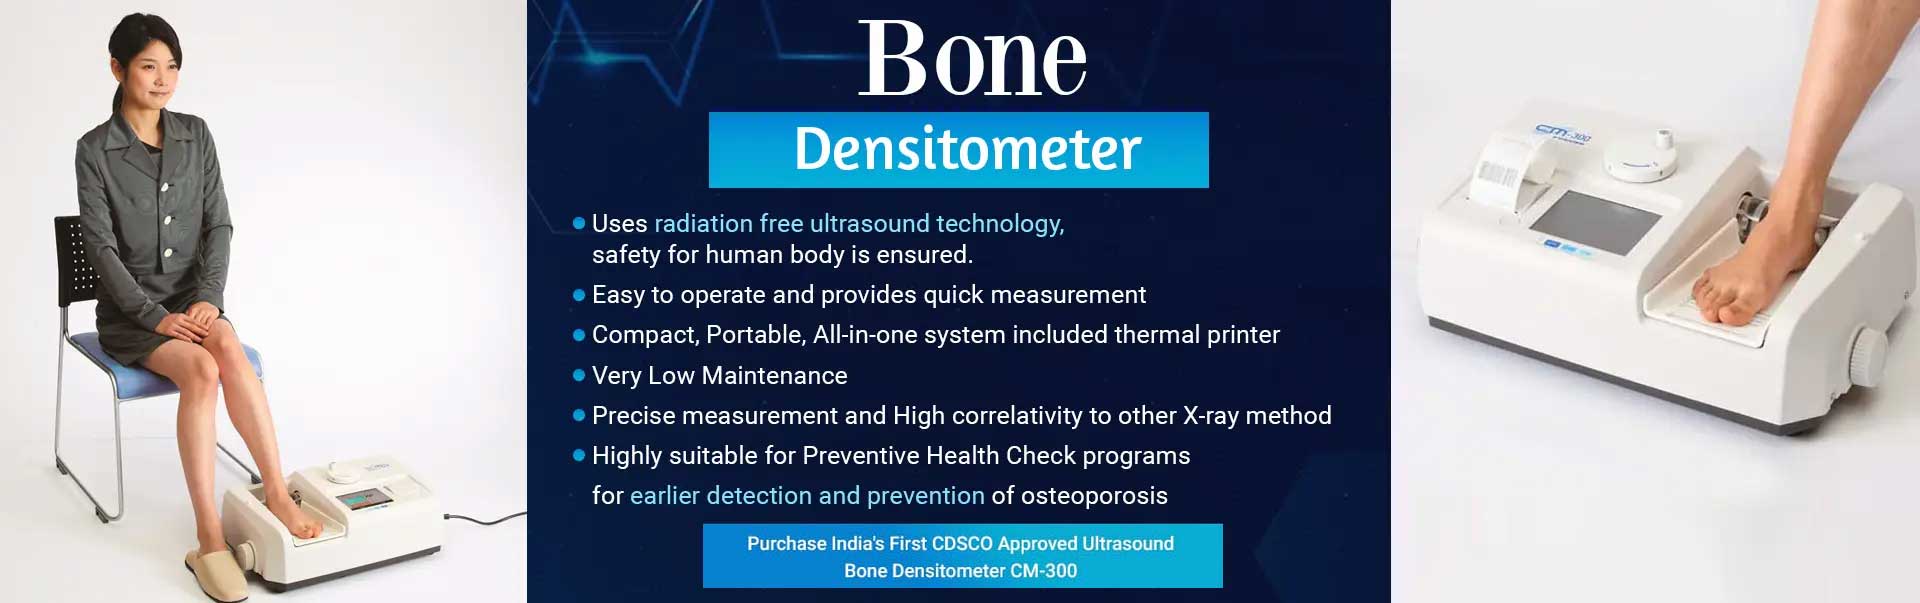 Bone Densitometer Manufacturers in Pimpri Chinchwad